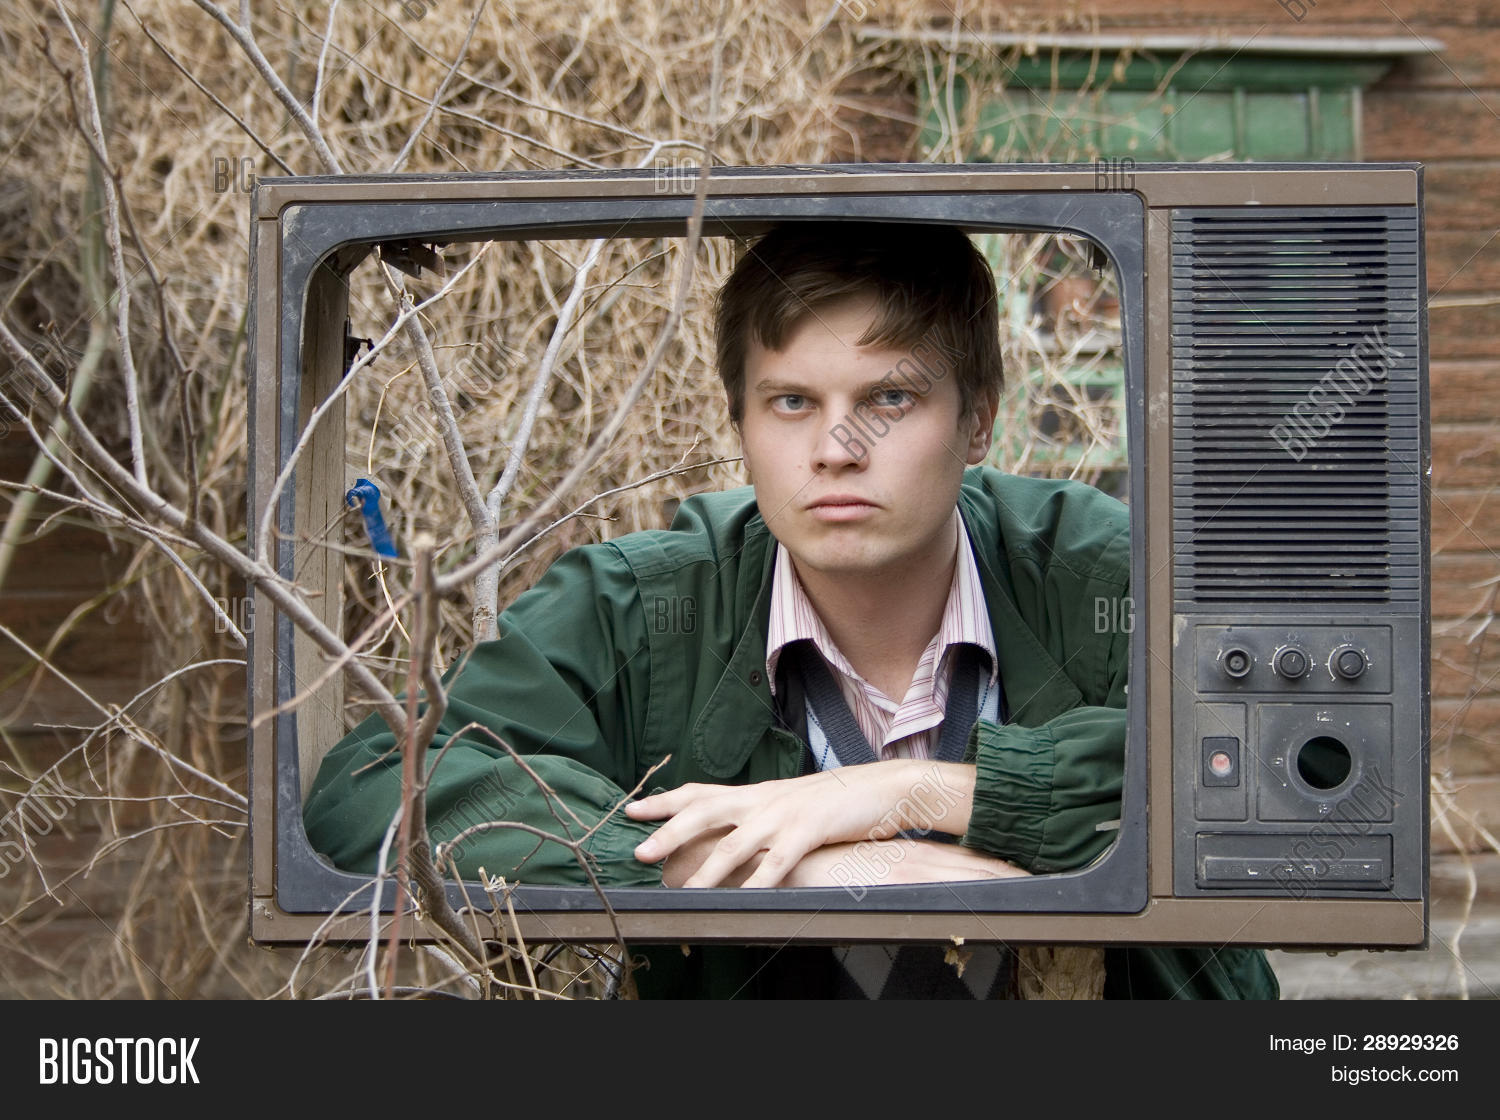 Новости про телевизоры. Старый телевизор. Человек со старым телевизором. Телевидение в поле. Старый телевизор с Денди.